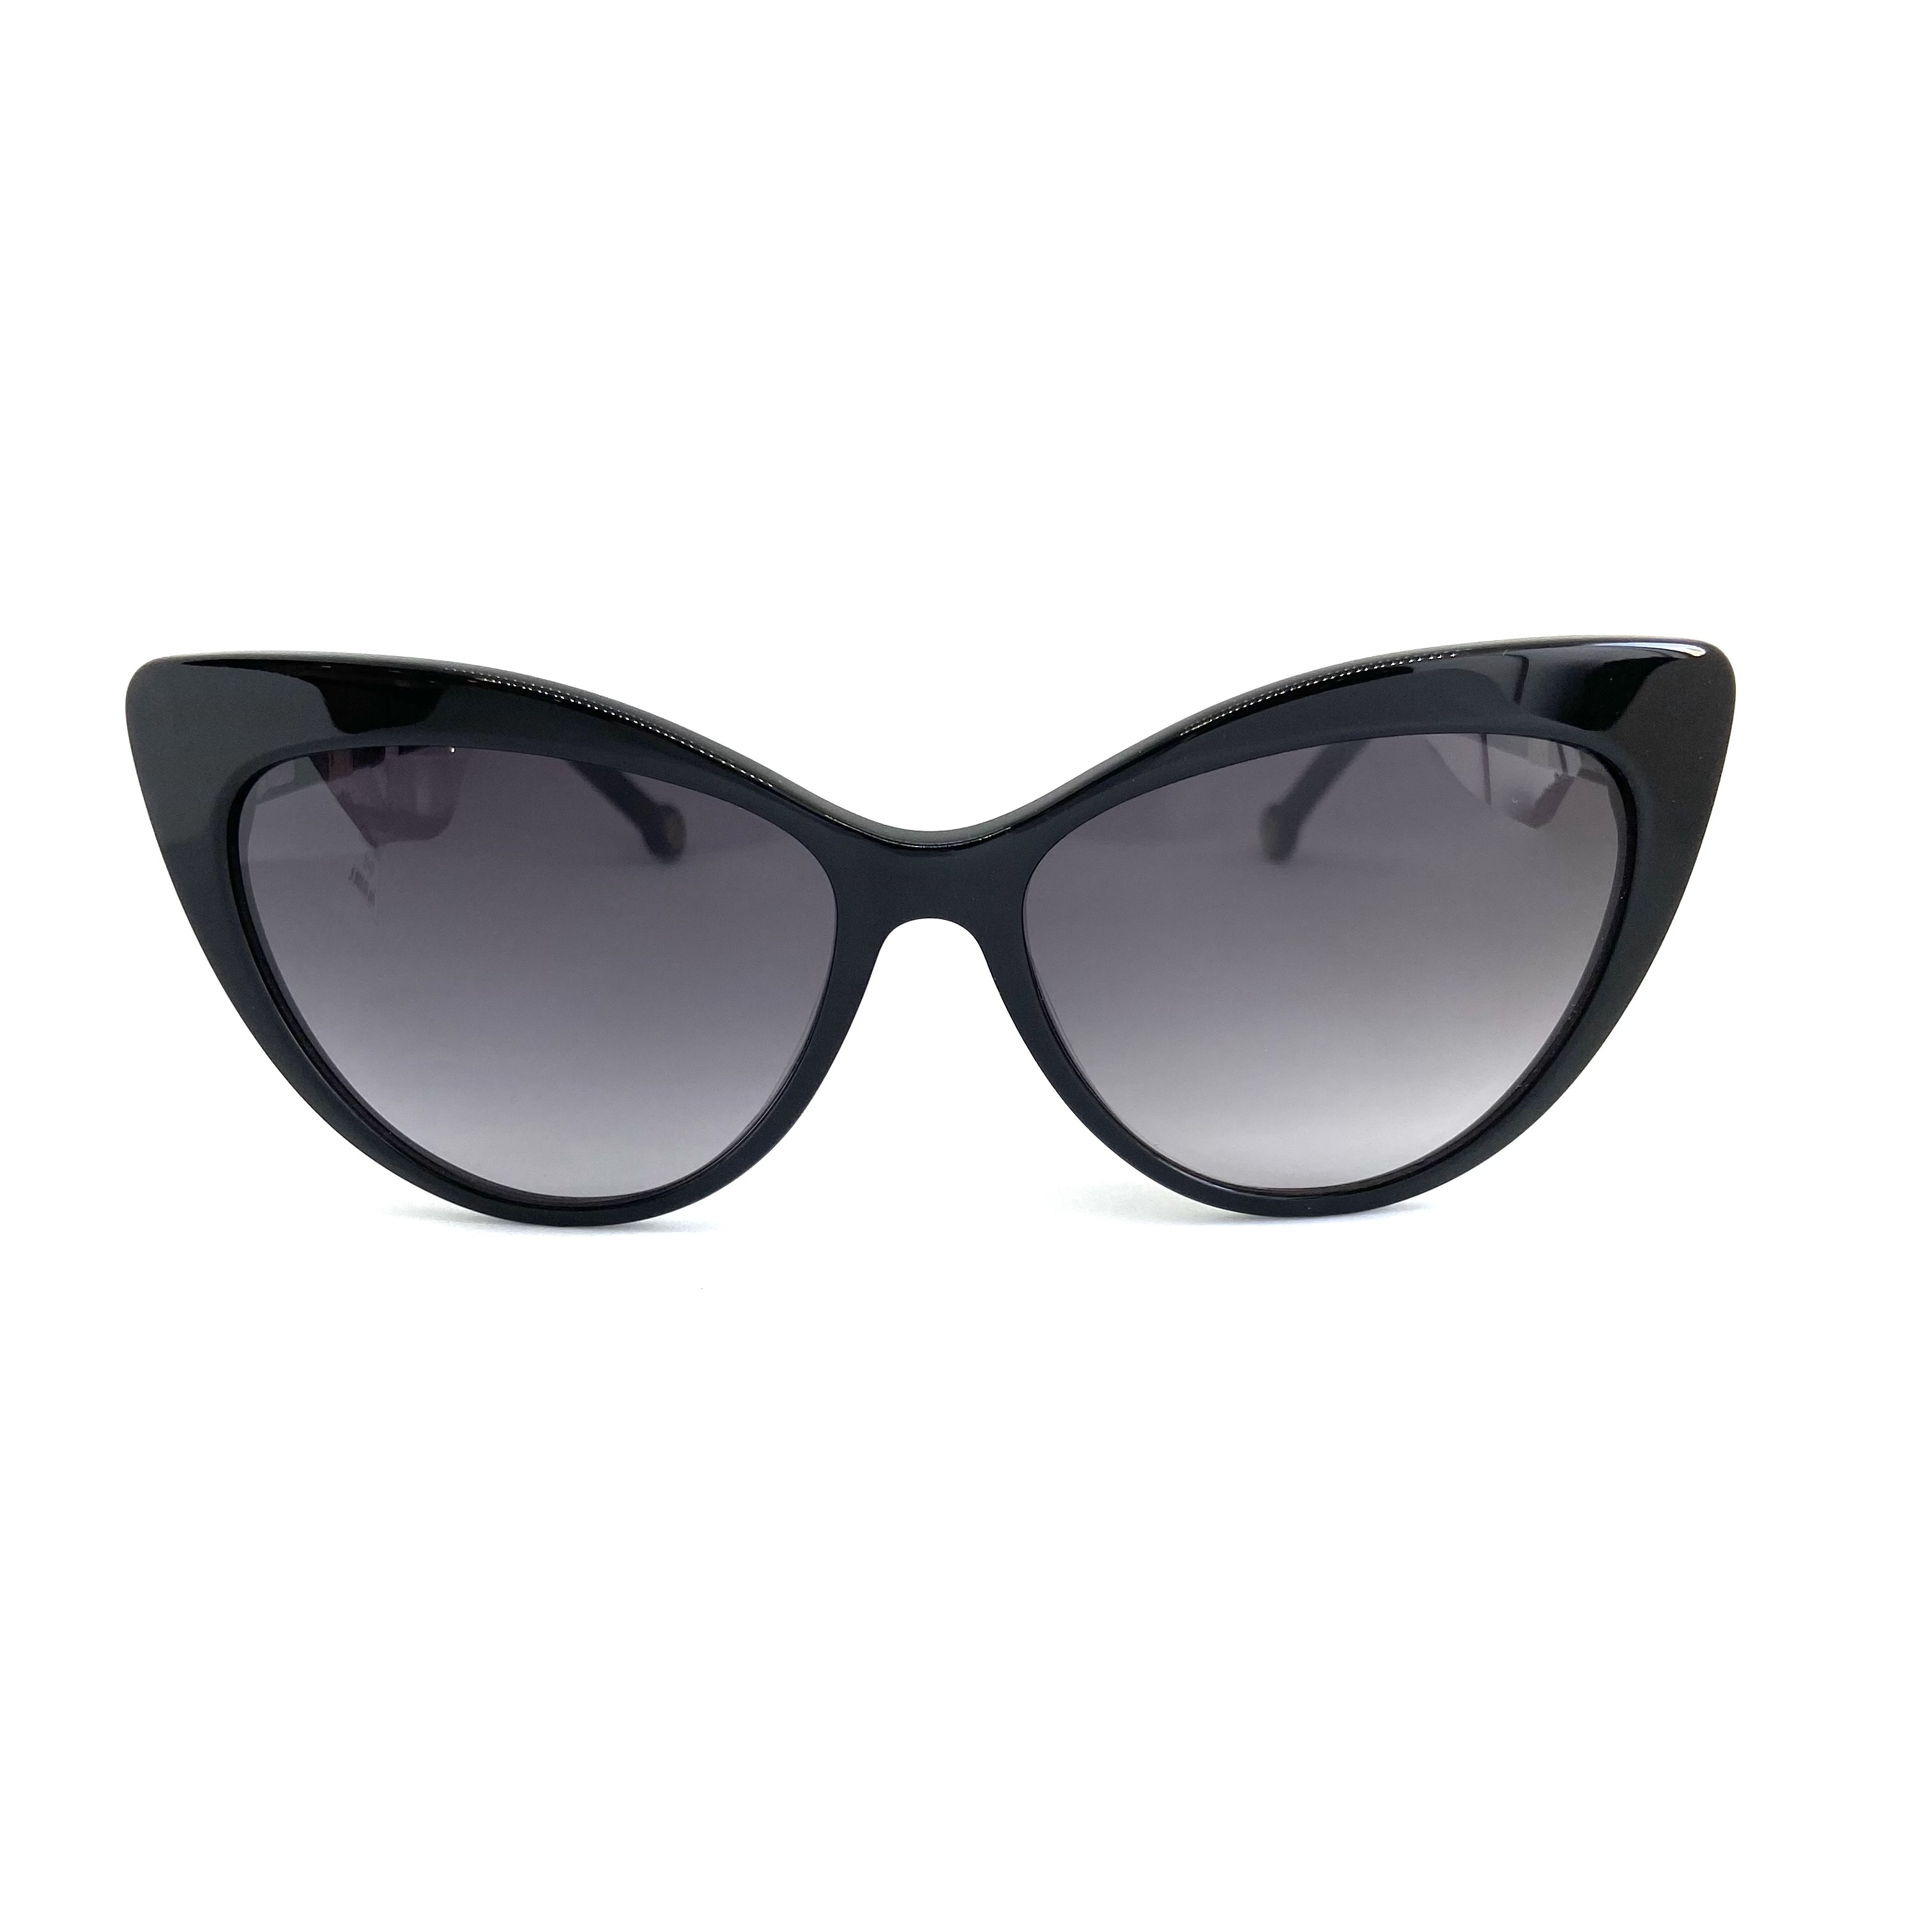 Солнцезащитные очки Enni Marco модель IS 11-491